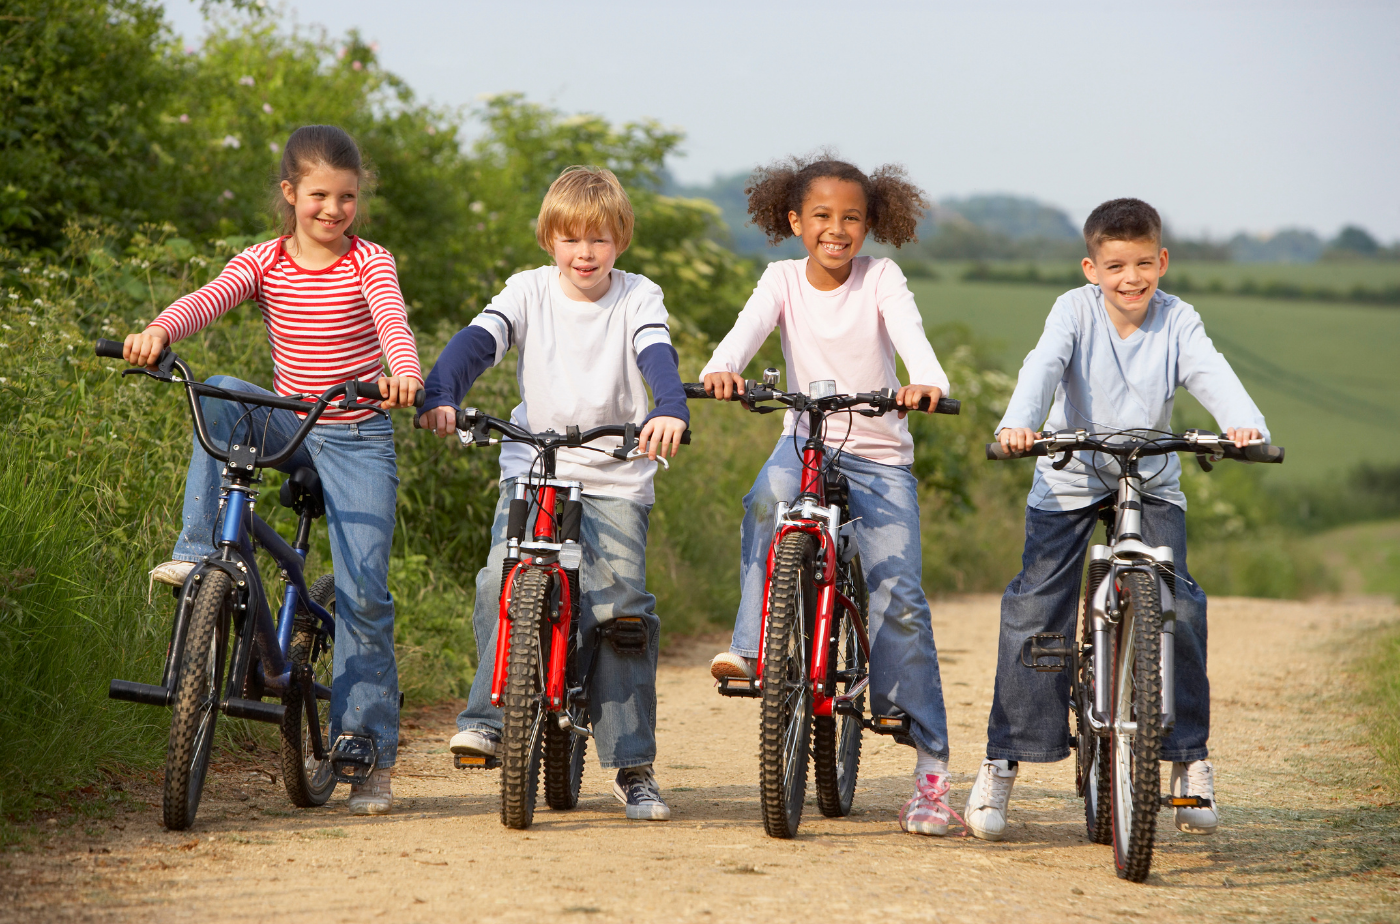 4 Kinder fahren draußen Fahrrad. Bis zum 30. Mai können die Materialien für die Teilnahme an der Kindermeilen-Kampagne kostenlos bestellt werden. Foto: Kids riding bikes outdoos von BananaStock von Photo Images via Canva.com